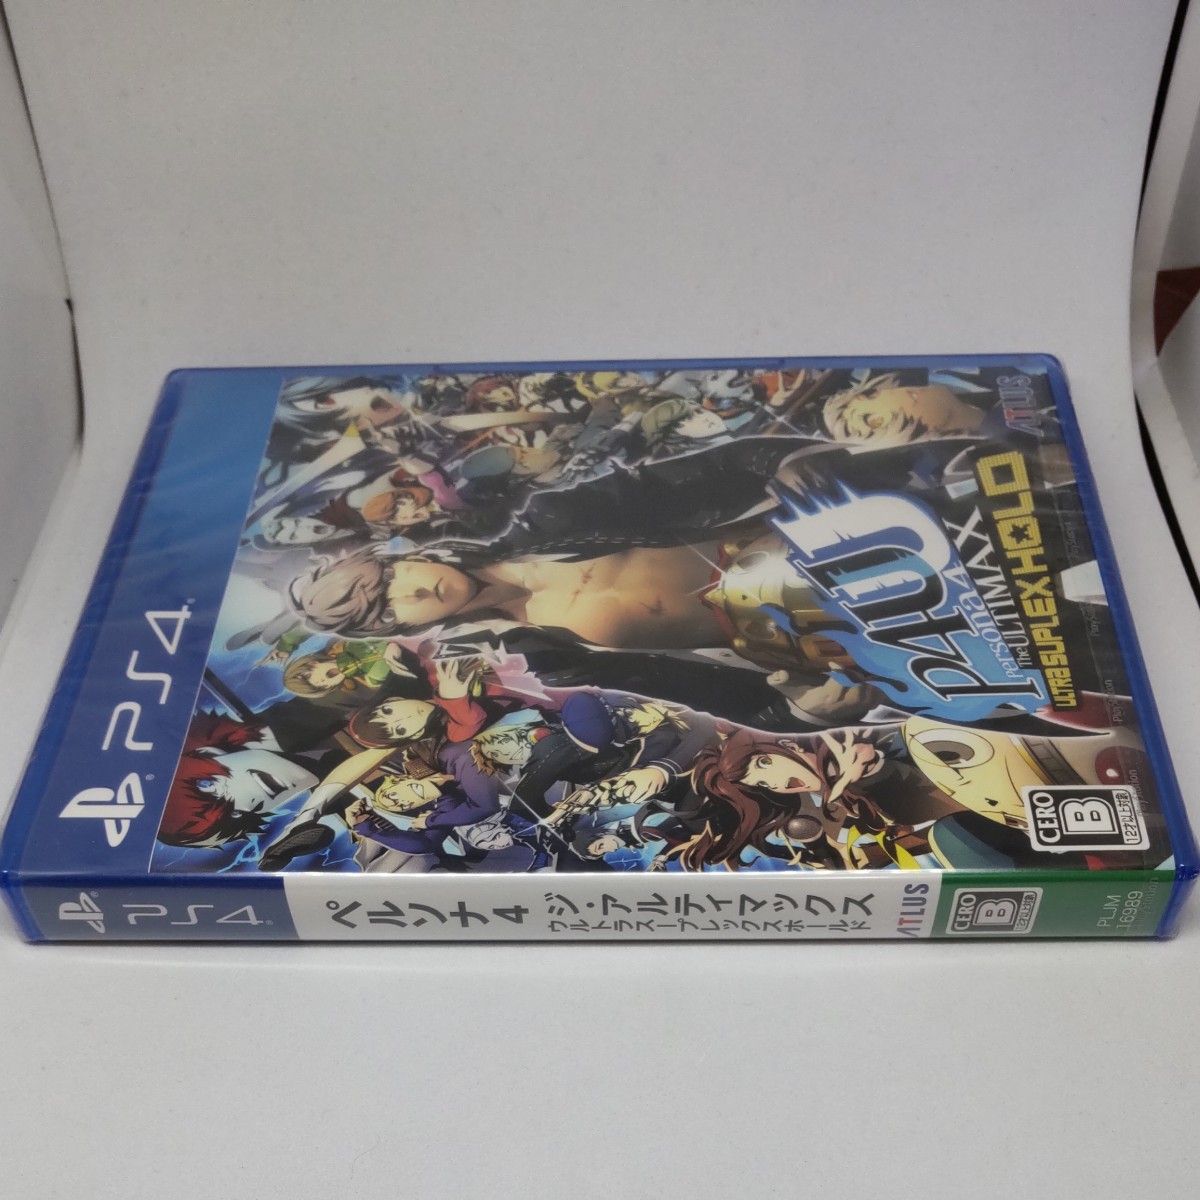 【PS4】ペルソナ4 ジアルティマックス ウルトラスープレックスホールド リマスター版